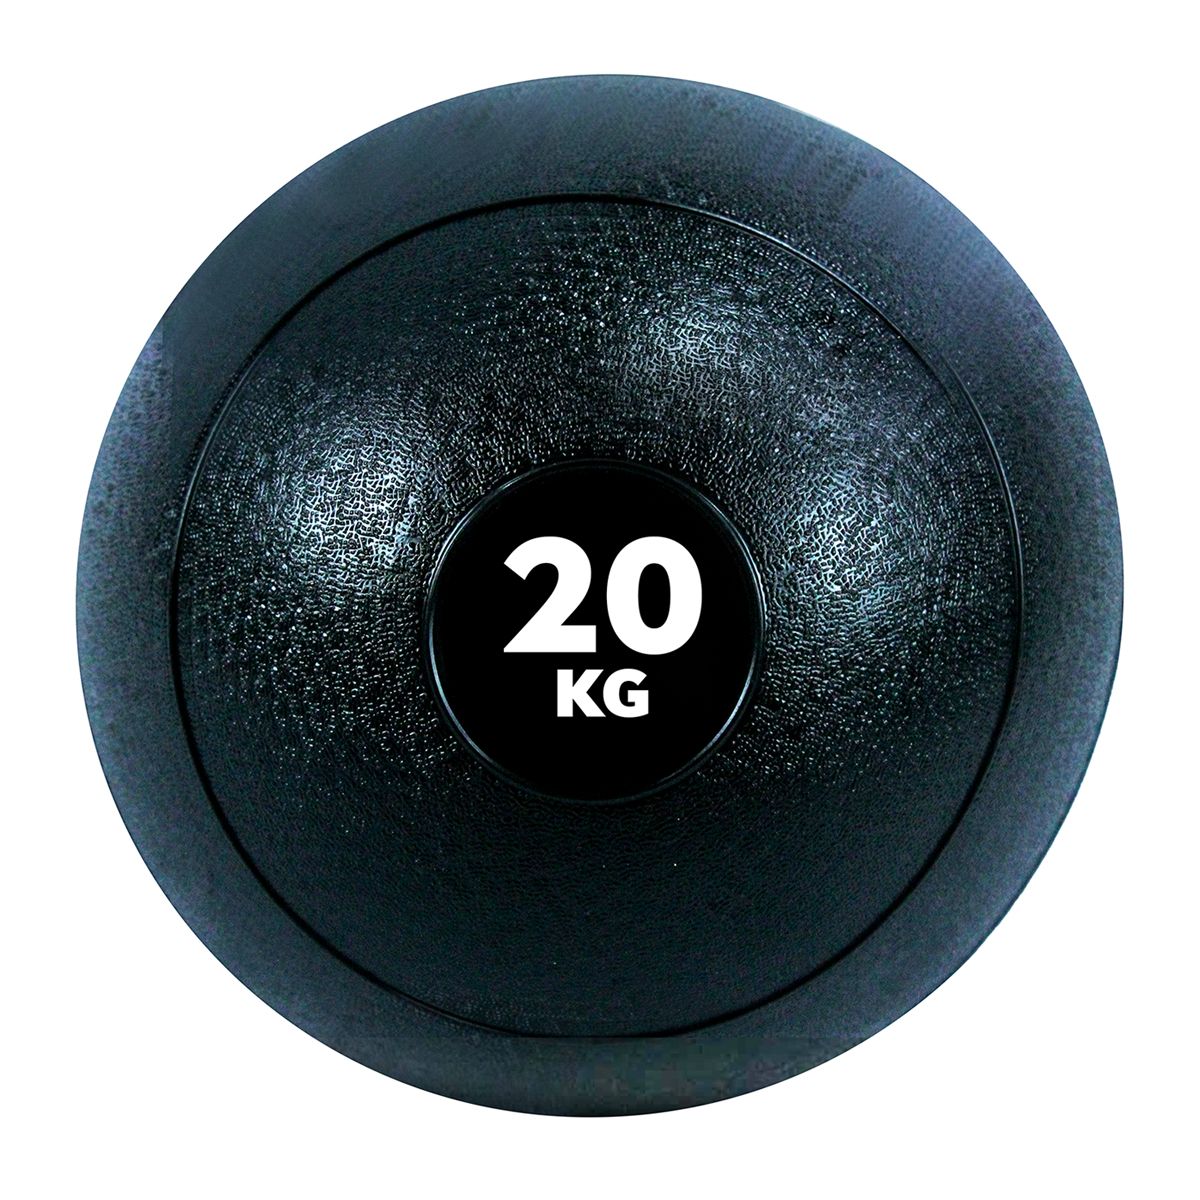 GladiatorFit Fitness-Beschwerungsball 'Slam Ball' aus Gummi | 20 KG